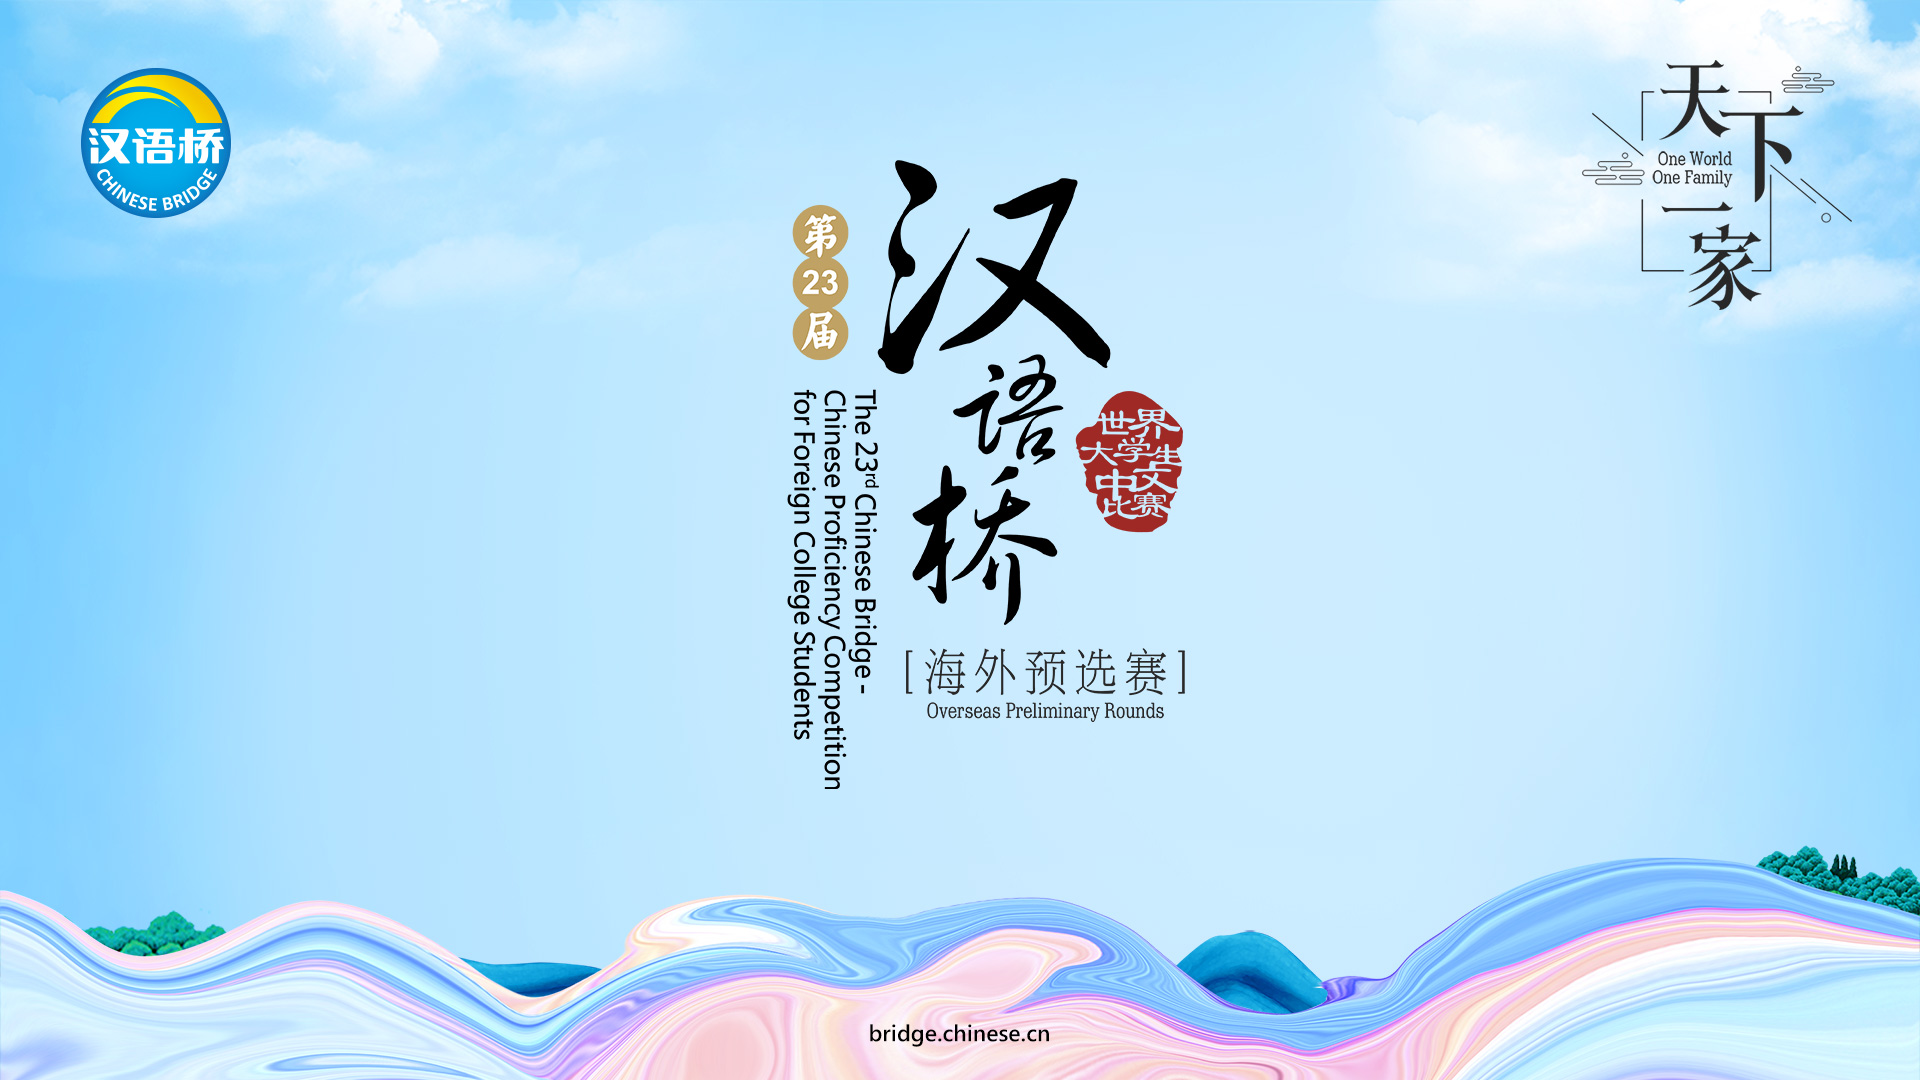 ประชาสัมพันธ์โครงการประกวดสุนทรพจน์และความรู้ภาษาจีนระดับอุดมศึกษา ครั้งที่ 23 ประจำปี 2567